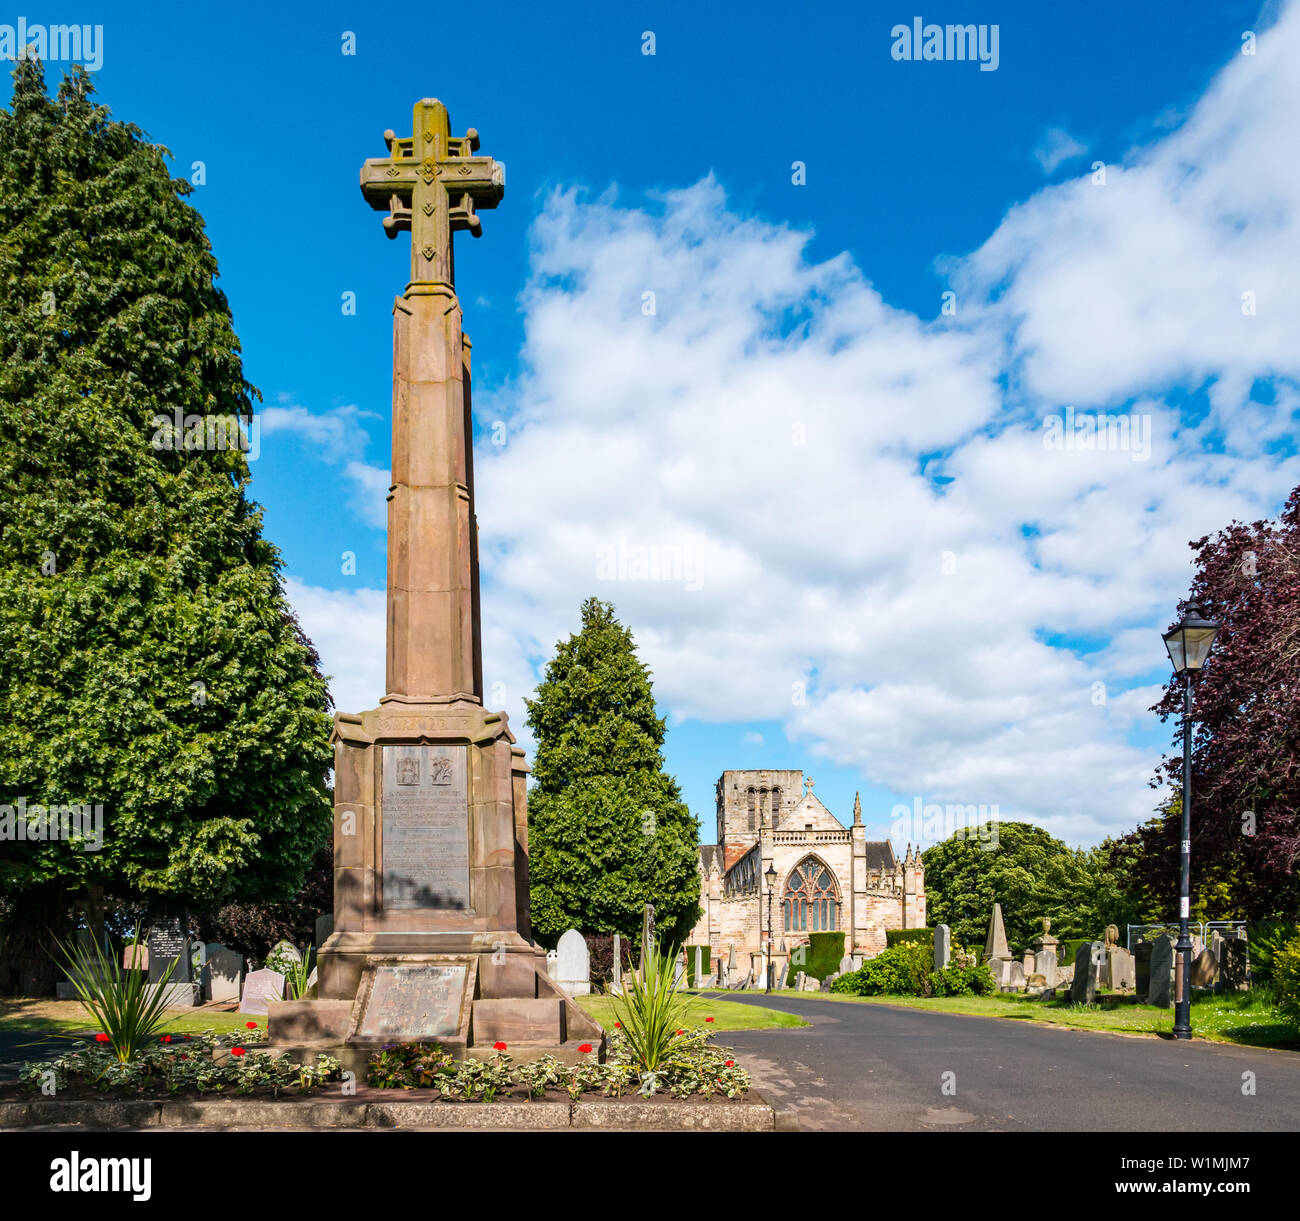 St Mary's Parish Church, Haddington, East Lothian, Scotland, UK Banque D'Images